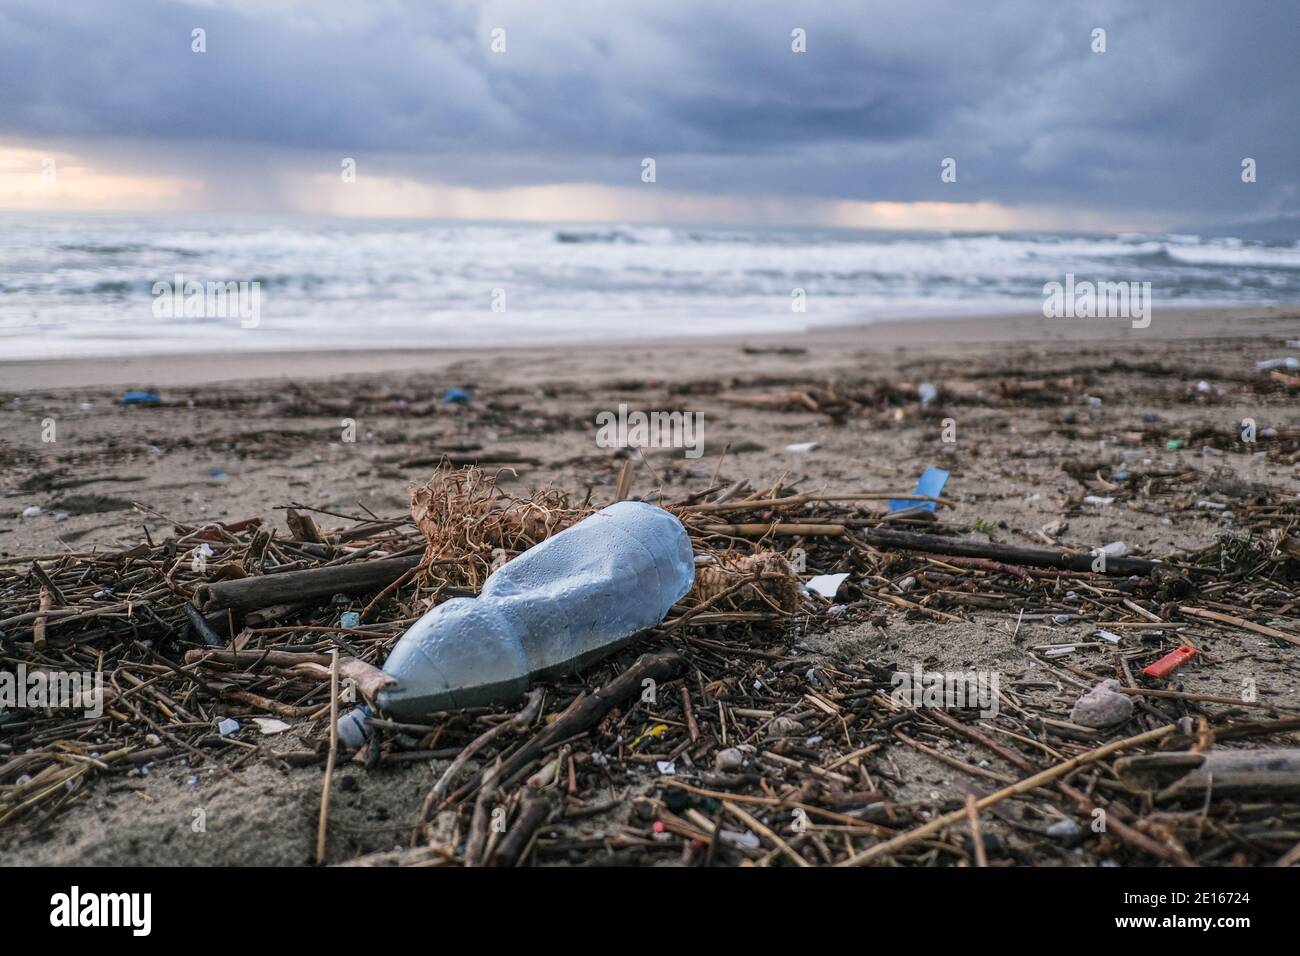 Plastikflasche auf schmutziger Müllhalde, verschmutztes Ozeanküsten-Ökosystem nach Seesturm Stockfoto